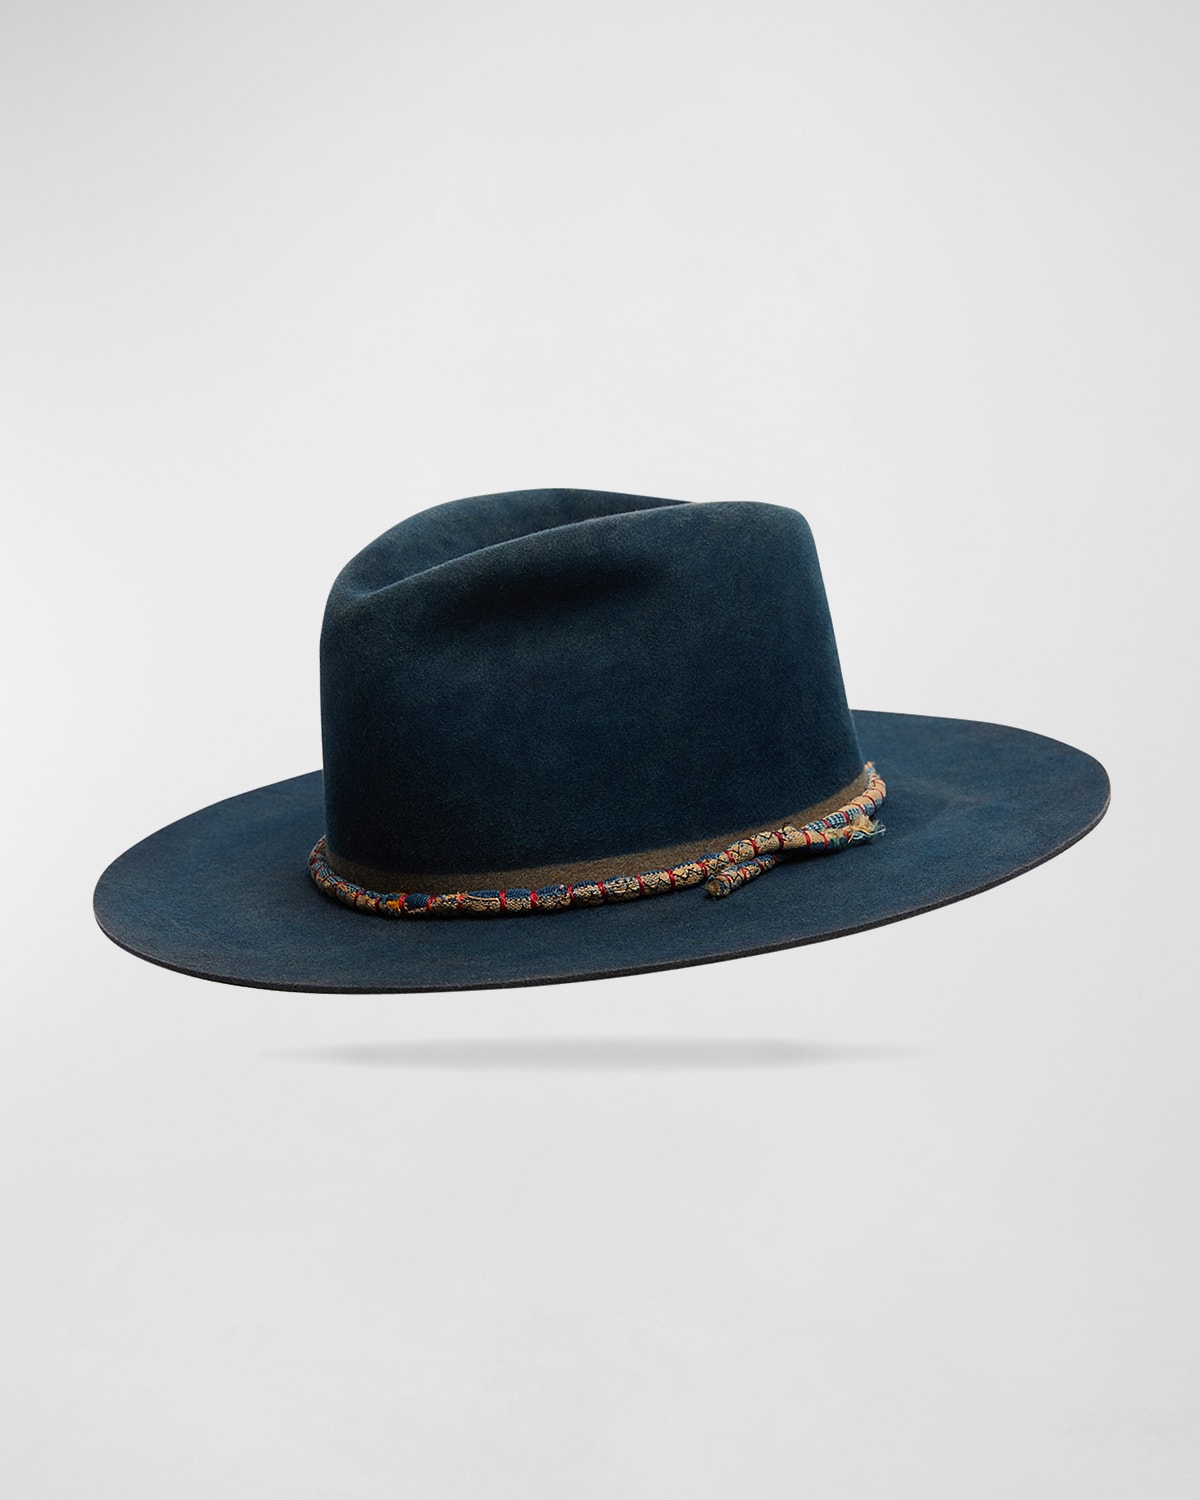 Men's Hand-Dyed Beaver Felt Fedora Hat